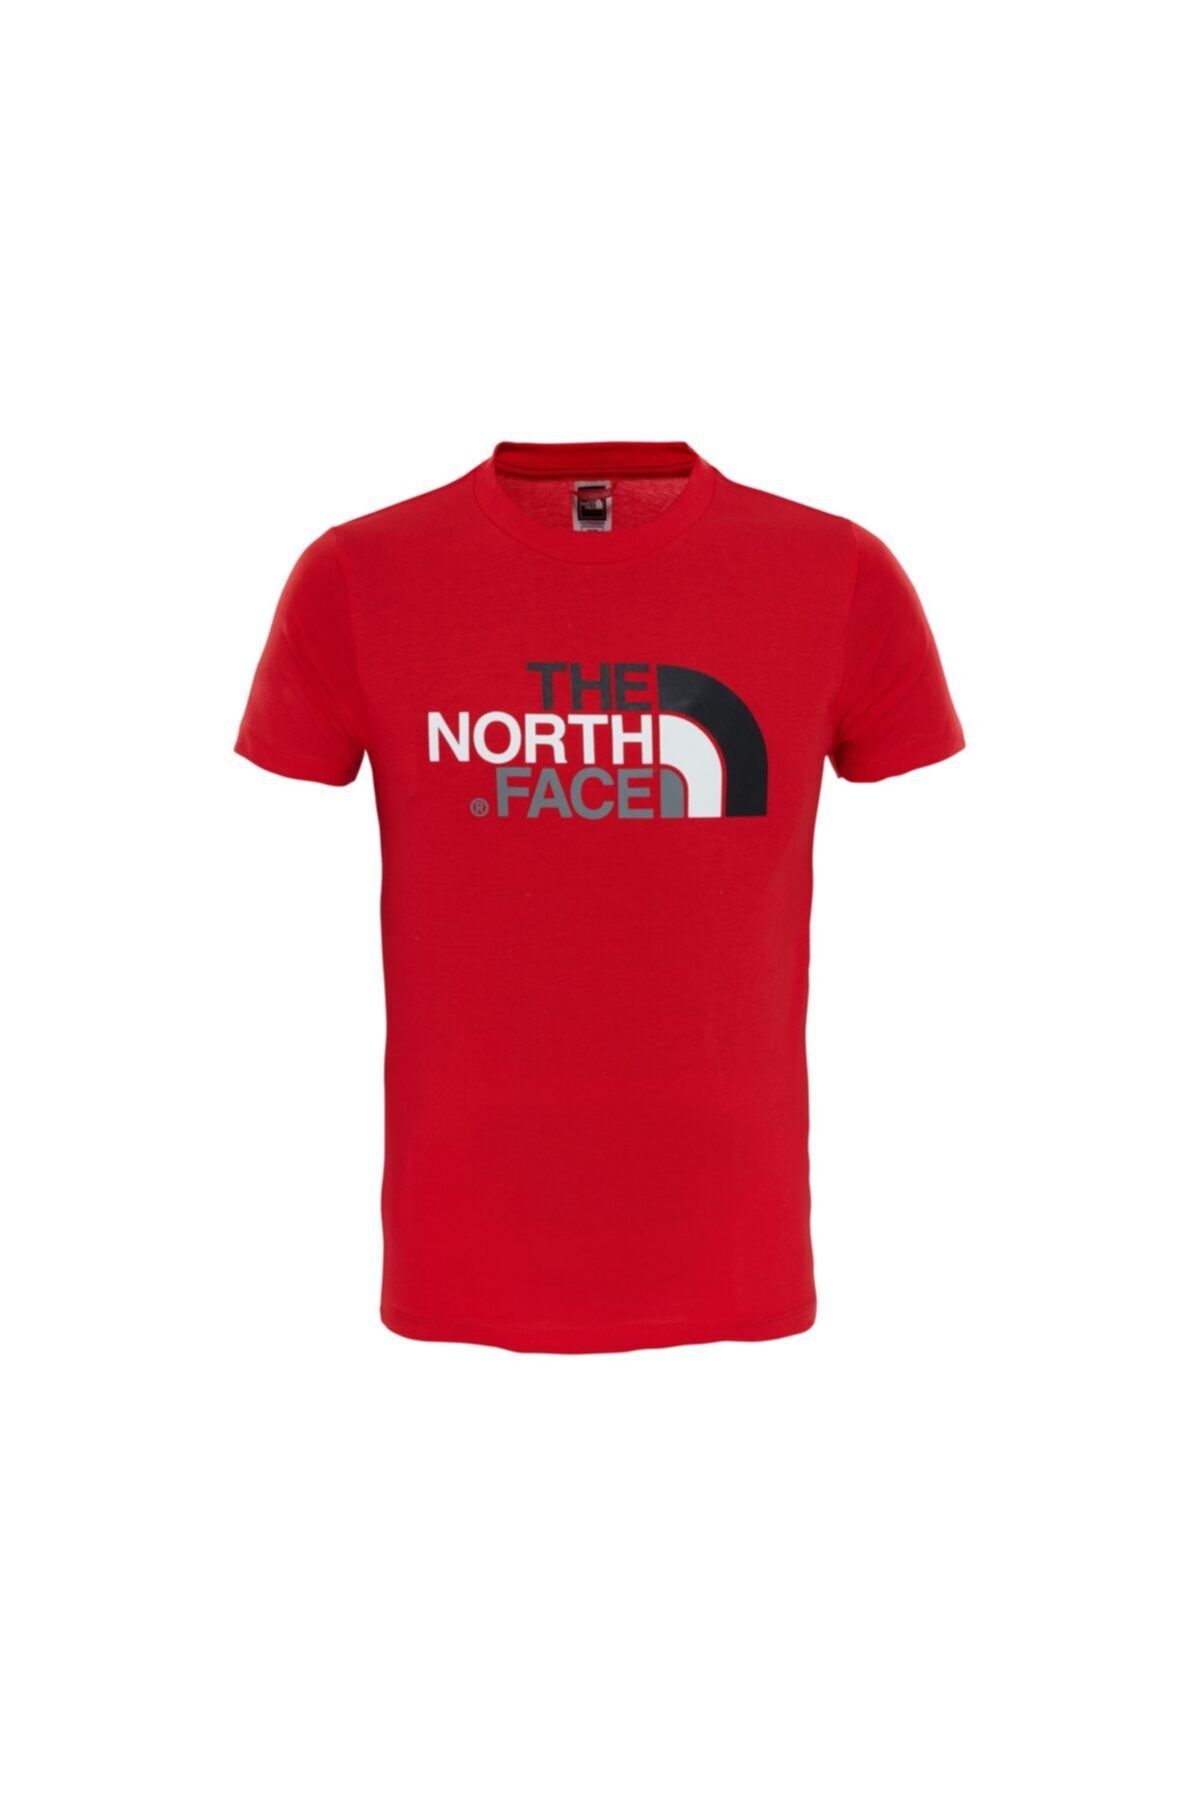 The North Face Y Ss Easy Tee Çocuk Tişörtü T0a3p7hcl Kırmızı